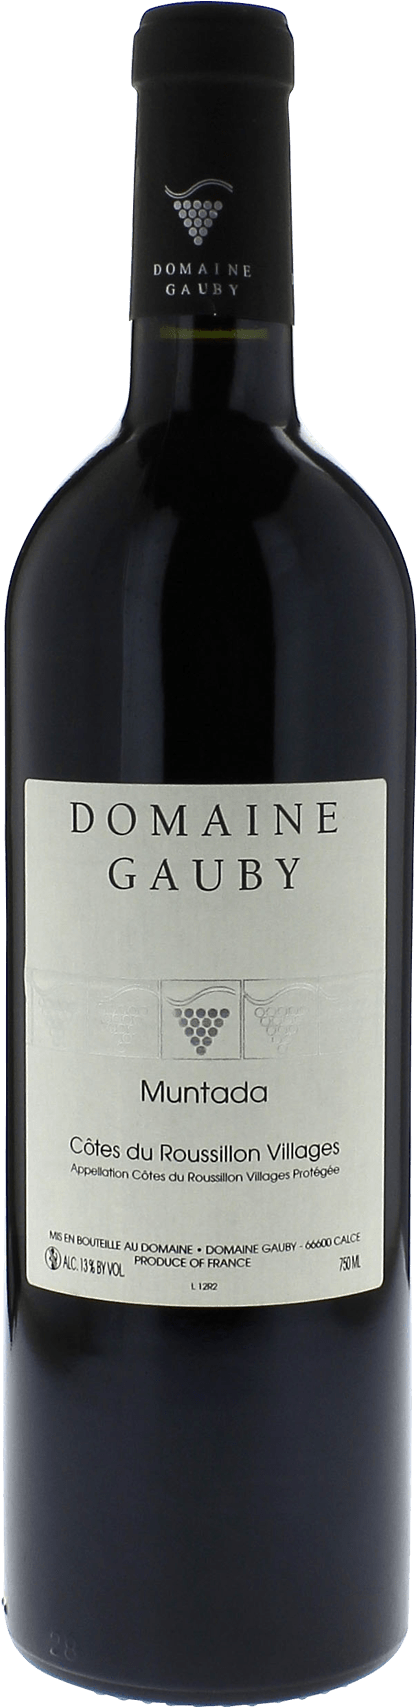 Gauby muntada 2001  , Cotes de Roussillon Villages rouge